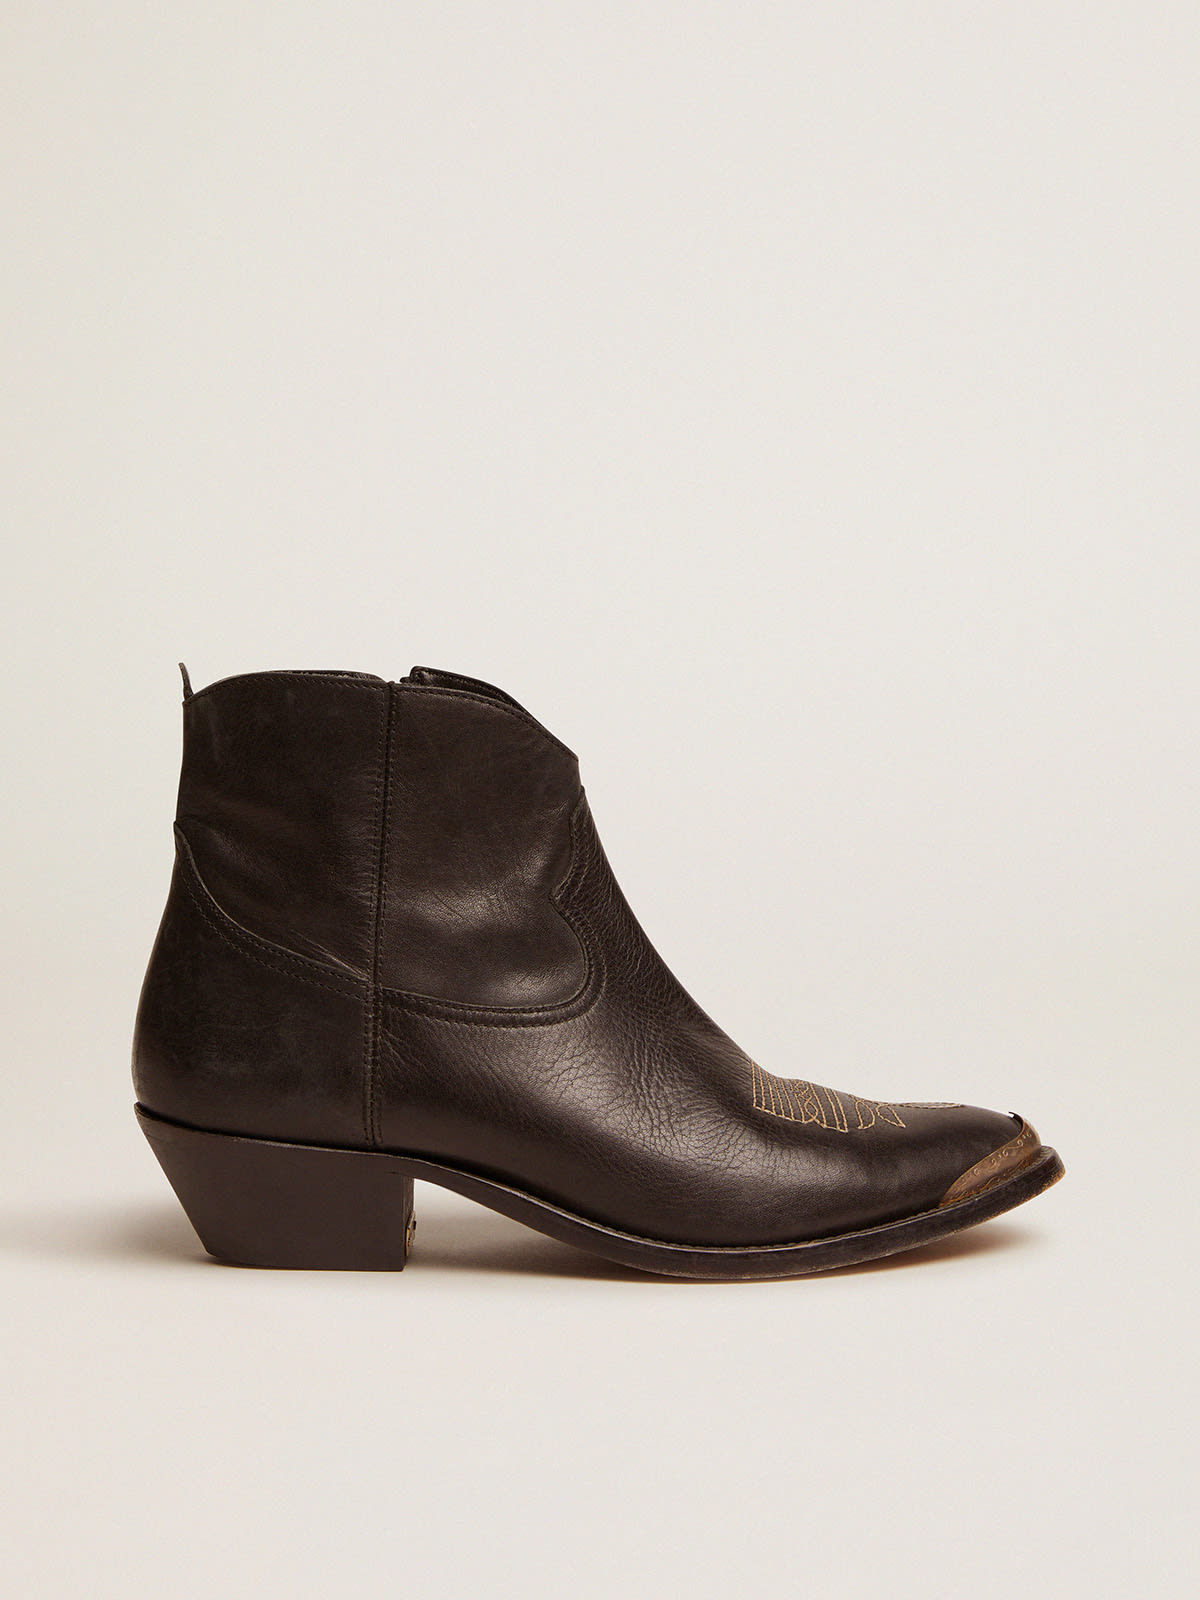 Golden Goose - Ankle boot Feminina de couro com decoração western in 